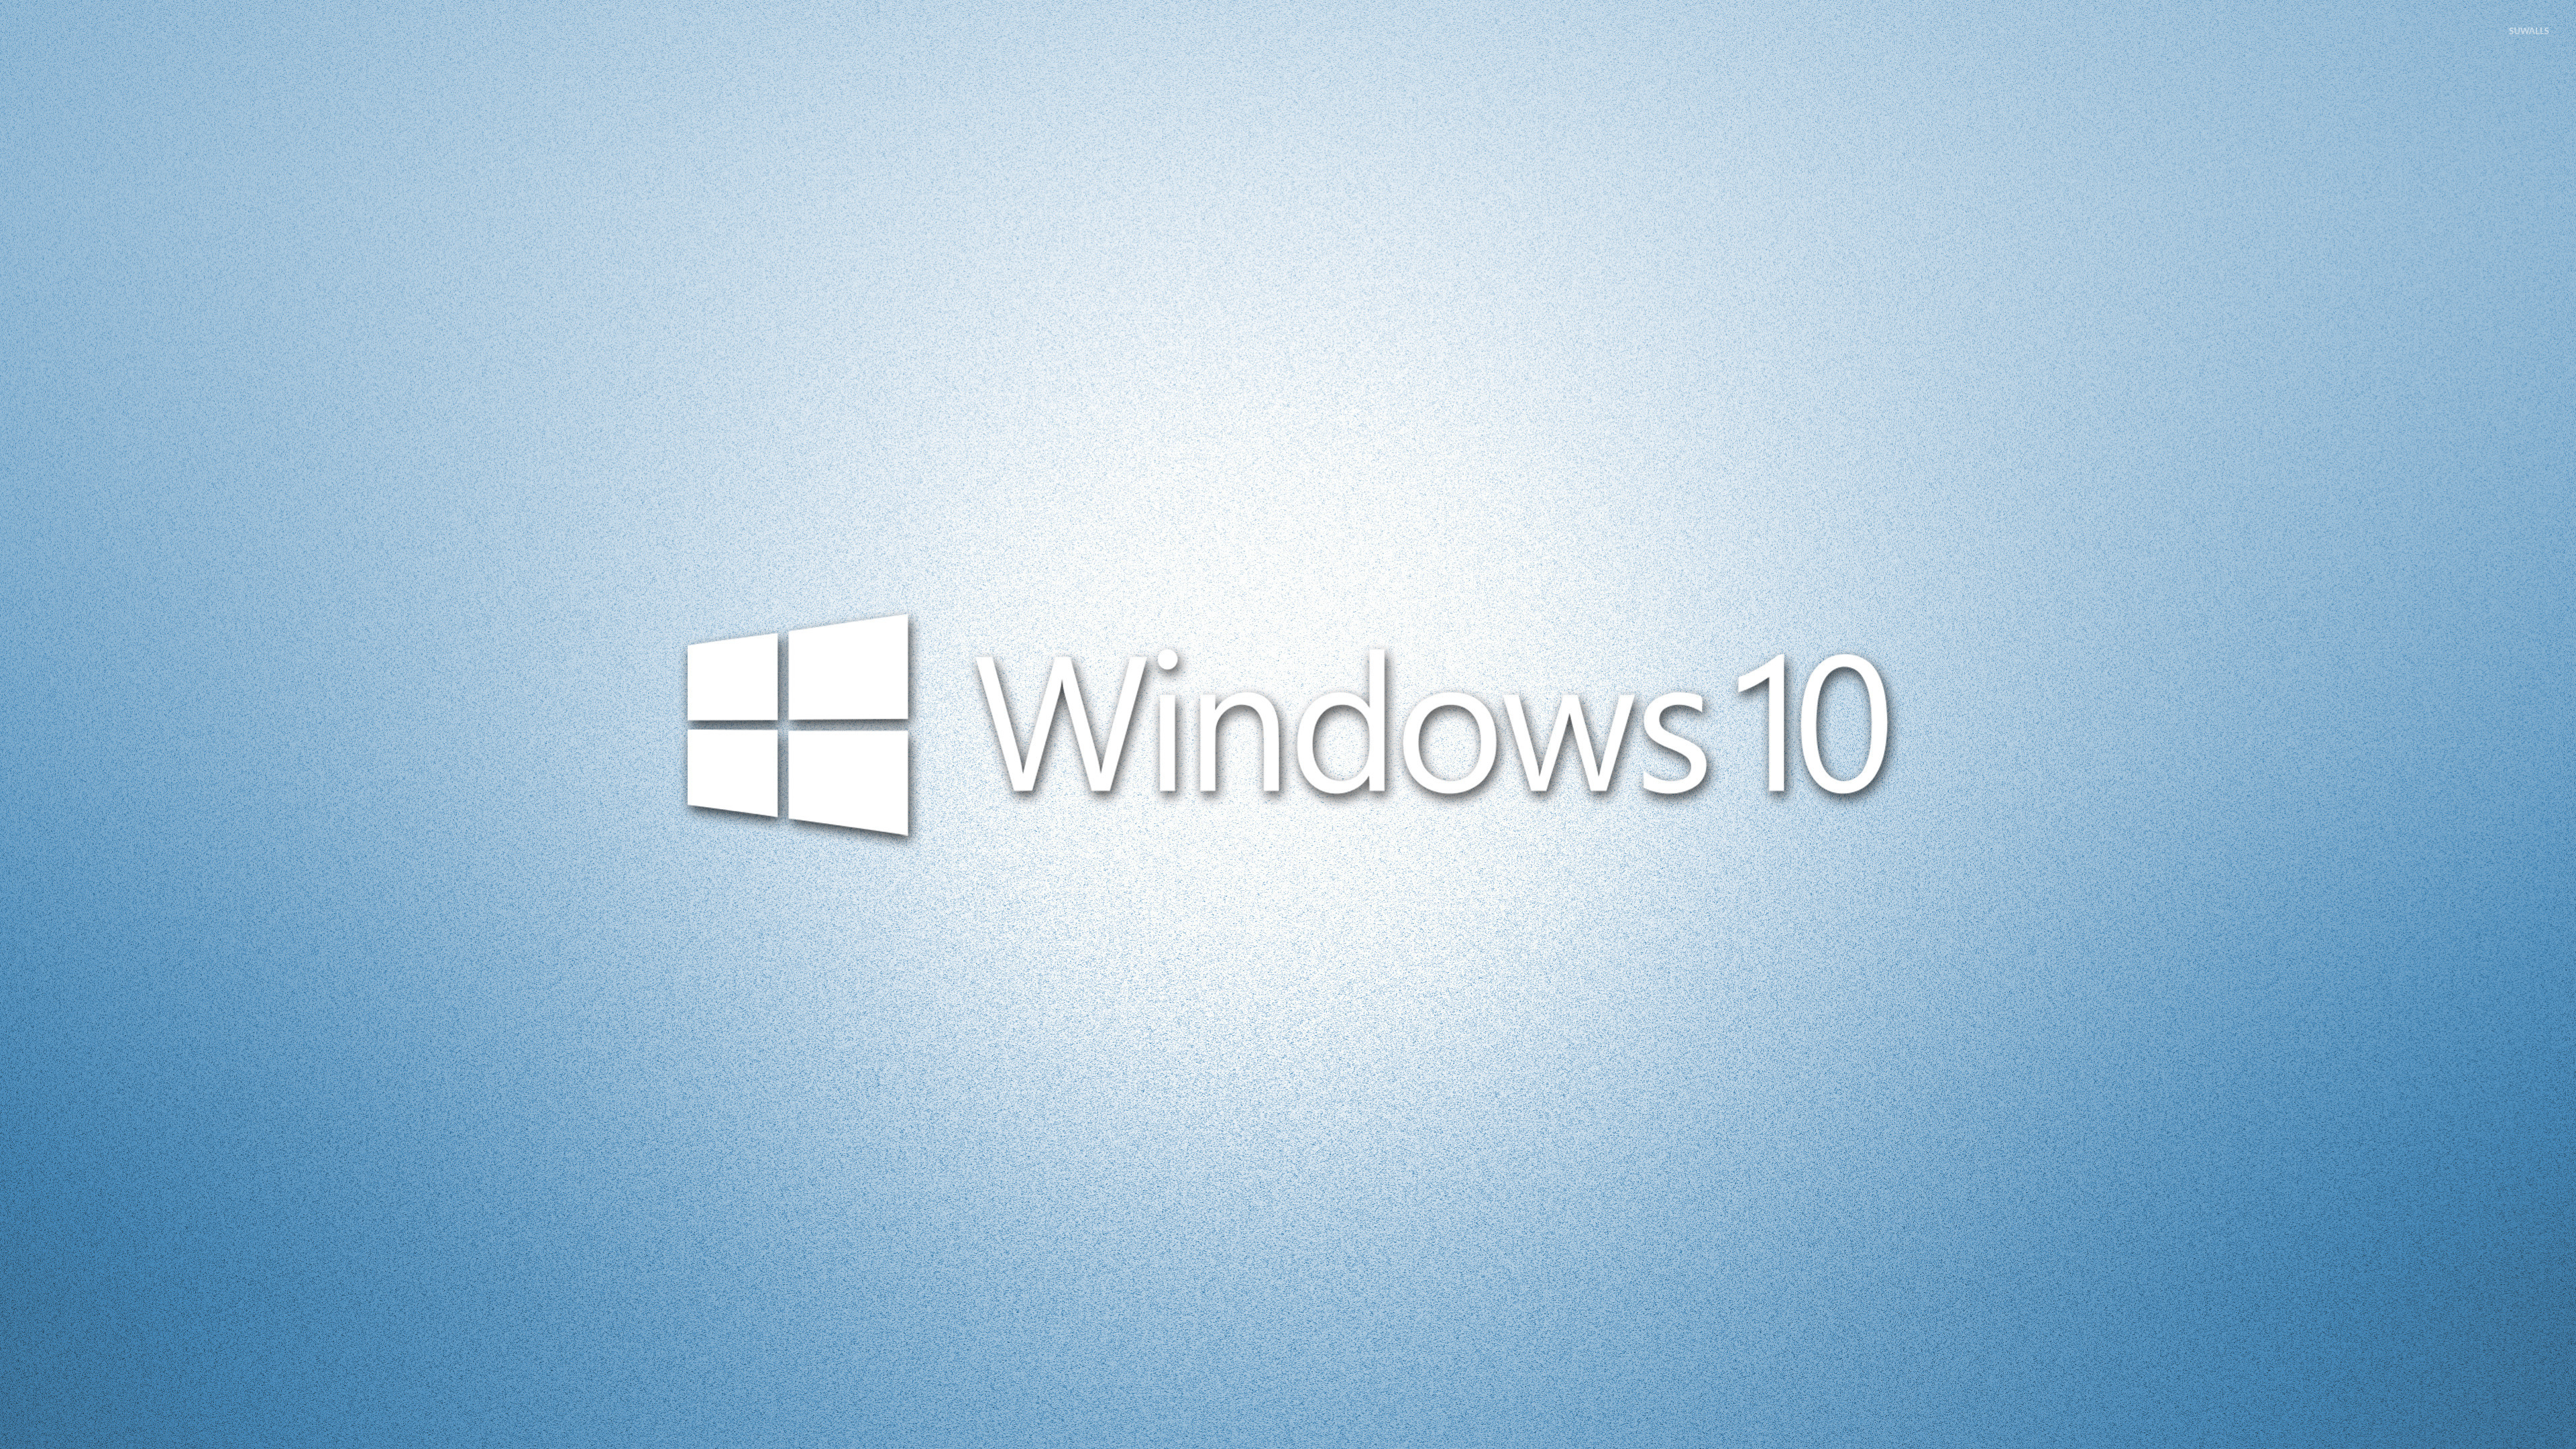 Windows 10 white text logo on light blue [2] wallpaper wallpaper